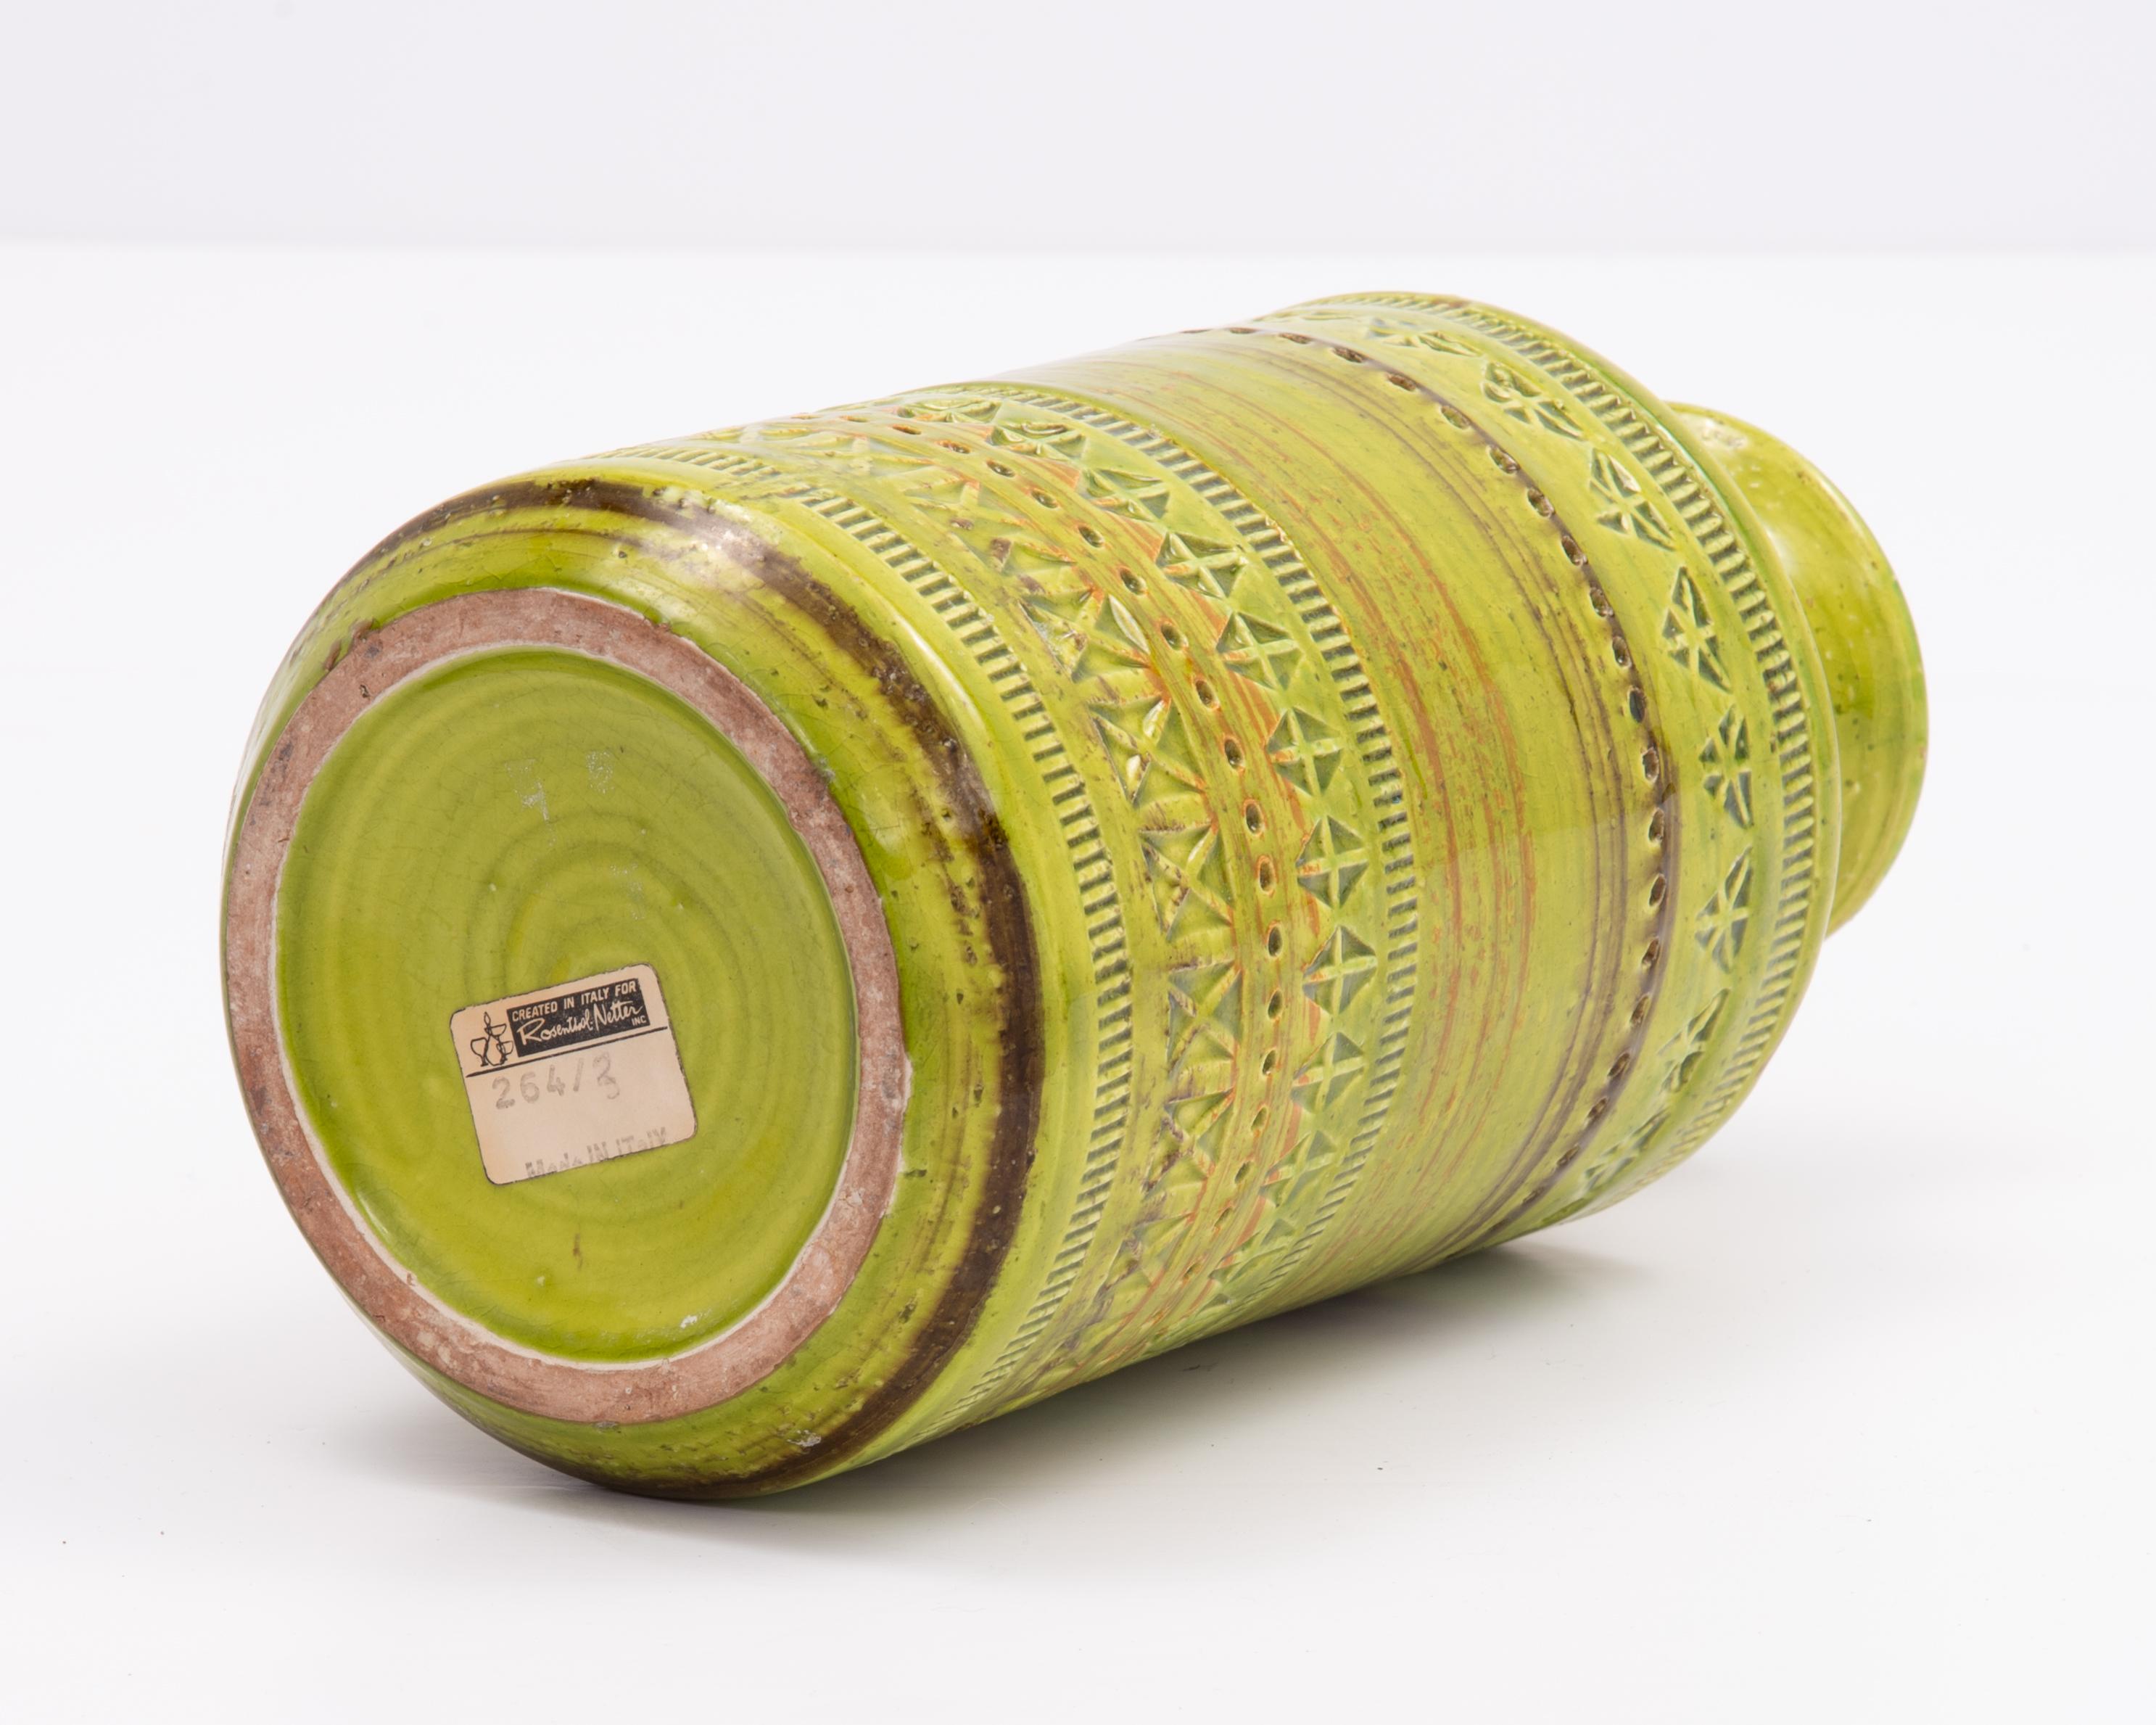 Green Aldo Londi Bitossi Rosenthal Netter Incised Vase For Sale 4